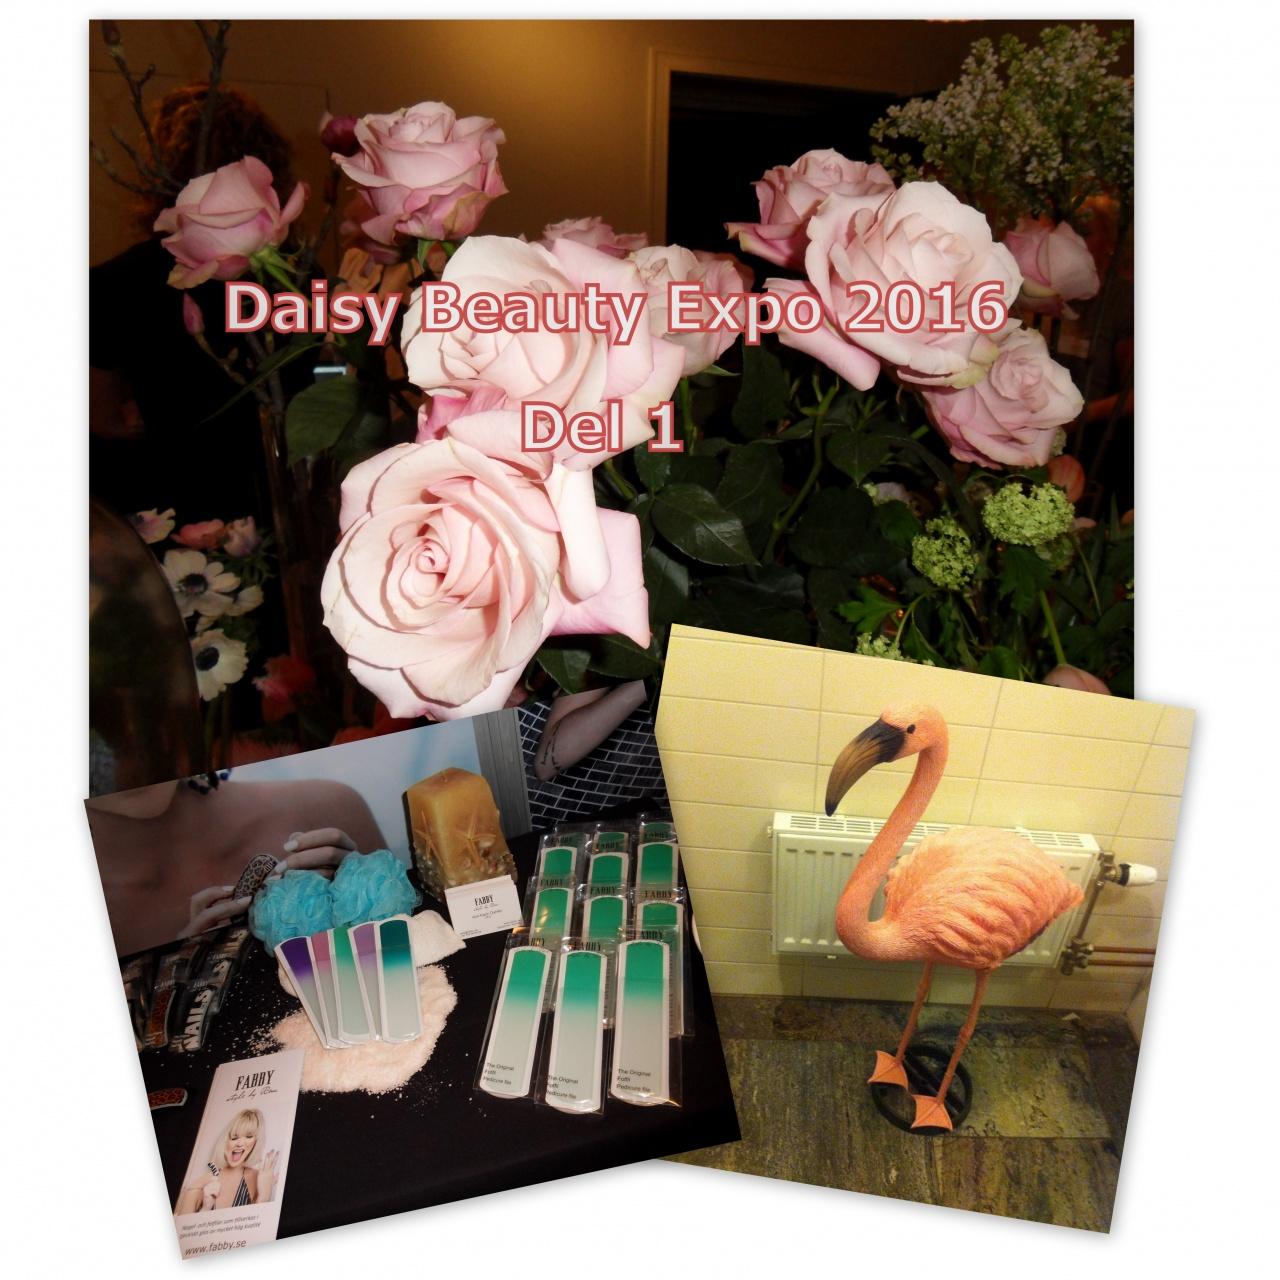 Daisy Beauty Expo 2016 – Del 1